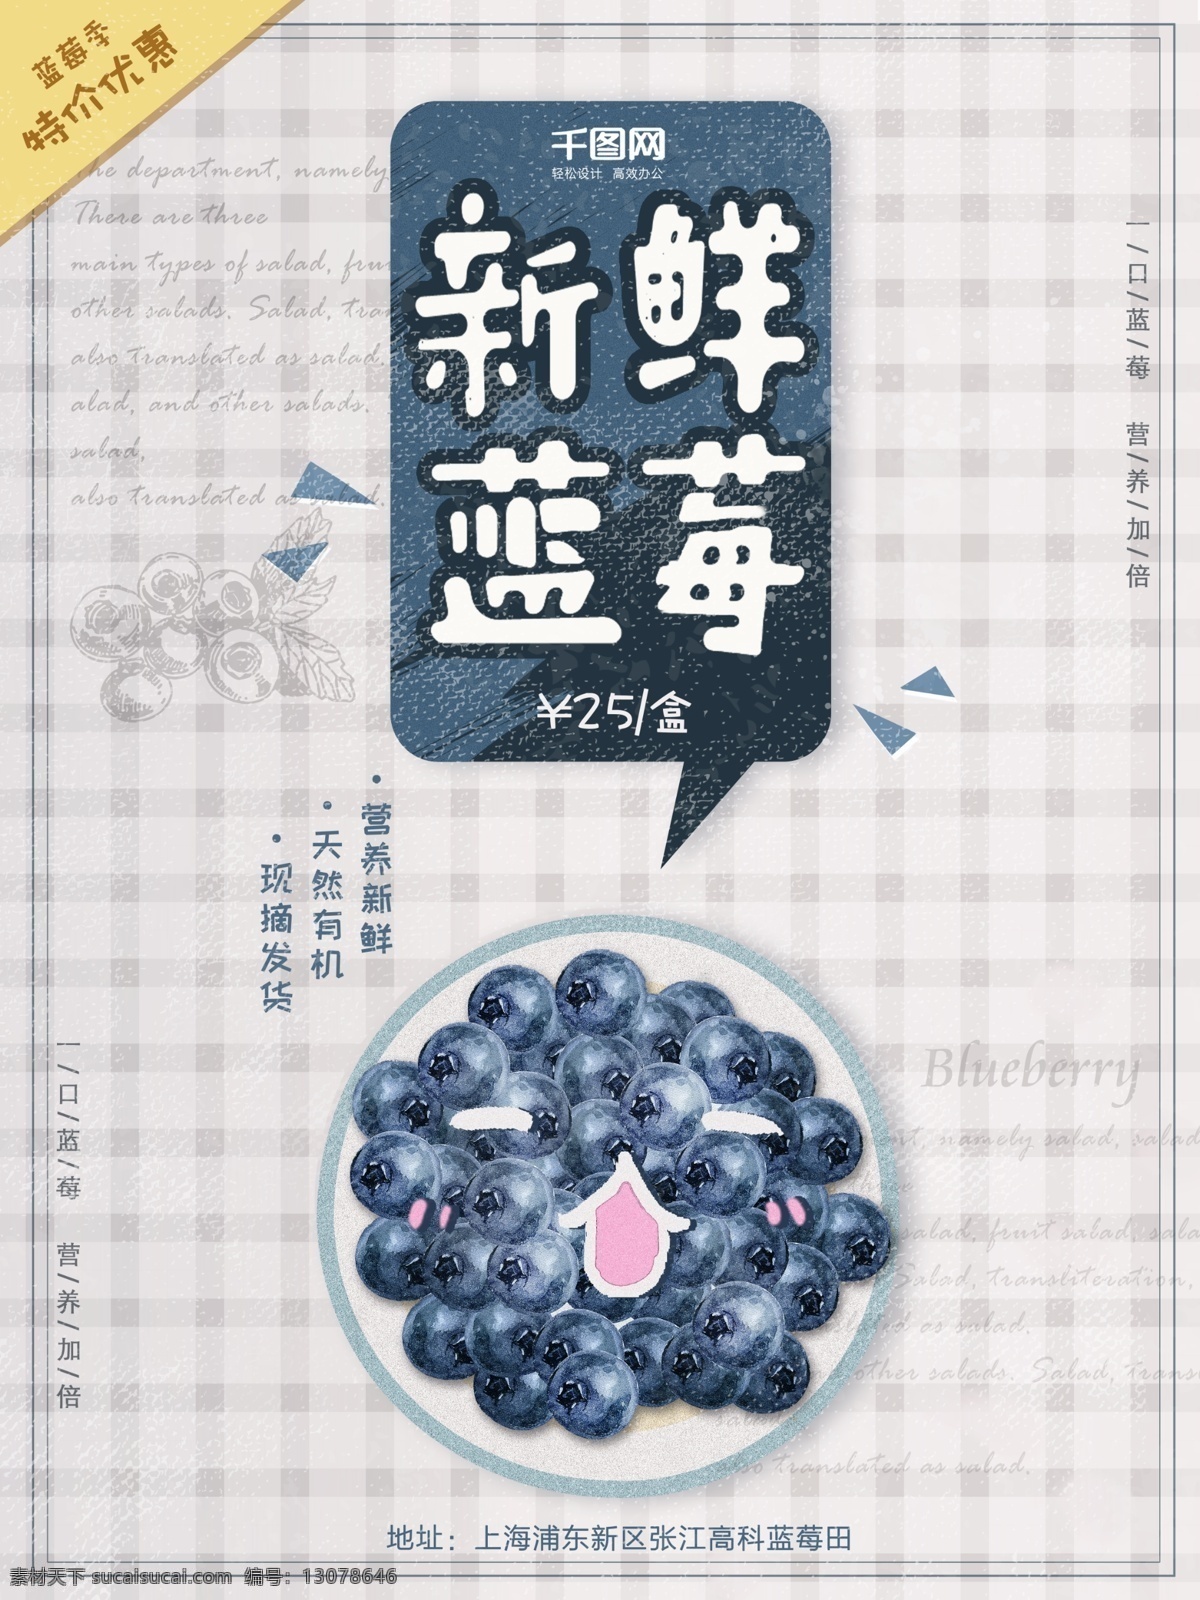 蓝莓 海报 水果 促销 淡雅 简约 蓝色 文艺 水果海报 促销海报 蓝莓海报 水果促销 简约设计